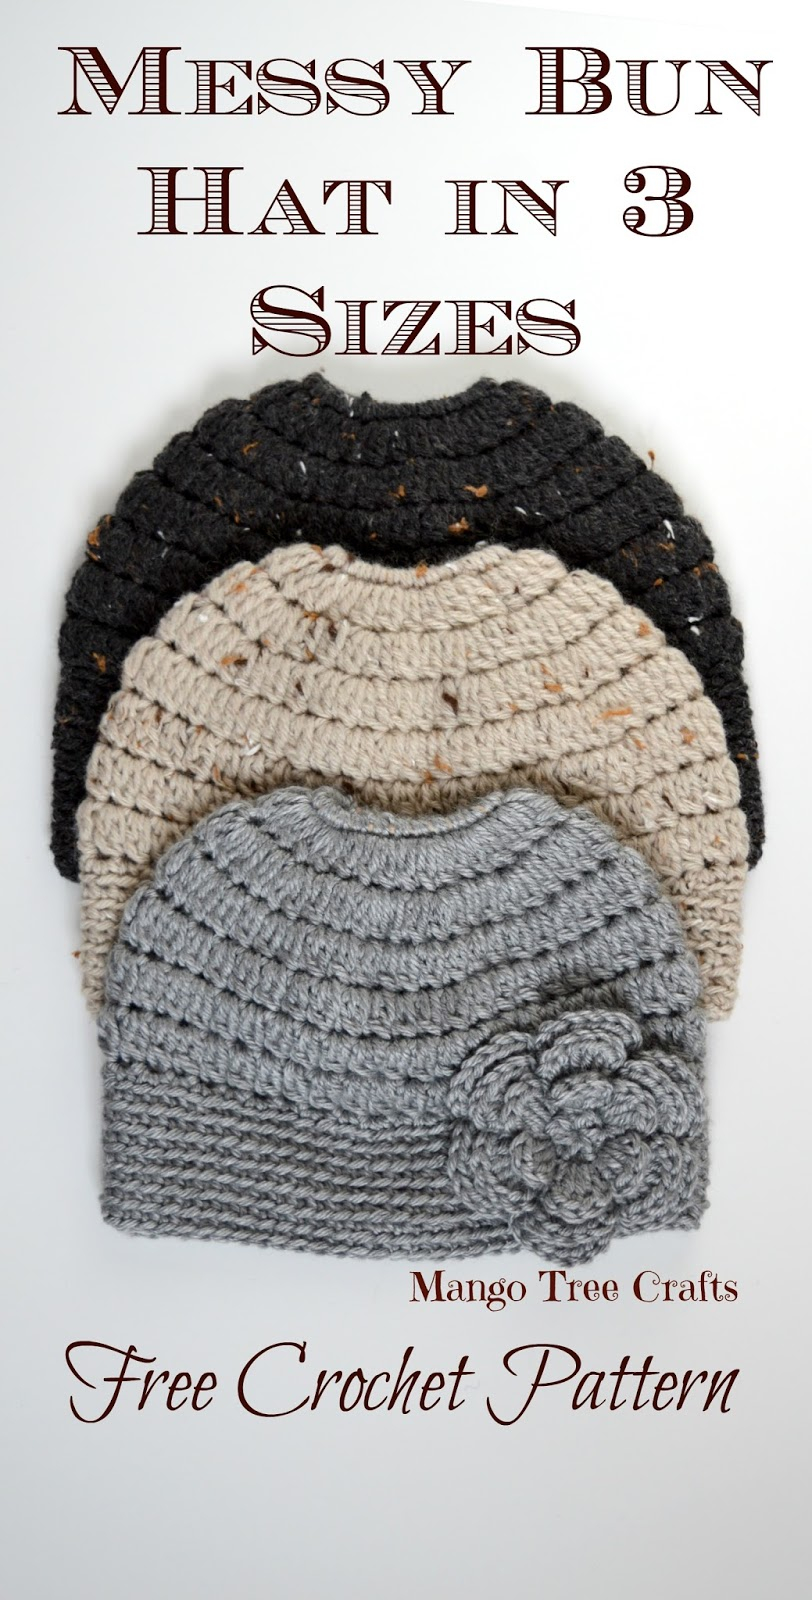 Free Hat Crochet Patterns Messy Bun Hat Free Crochet Pattern In 3 Sizes